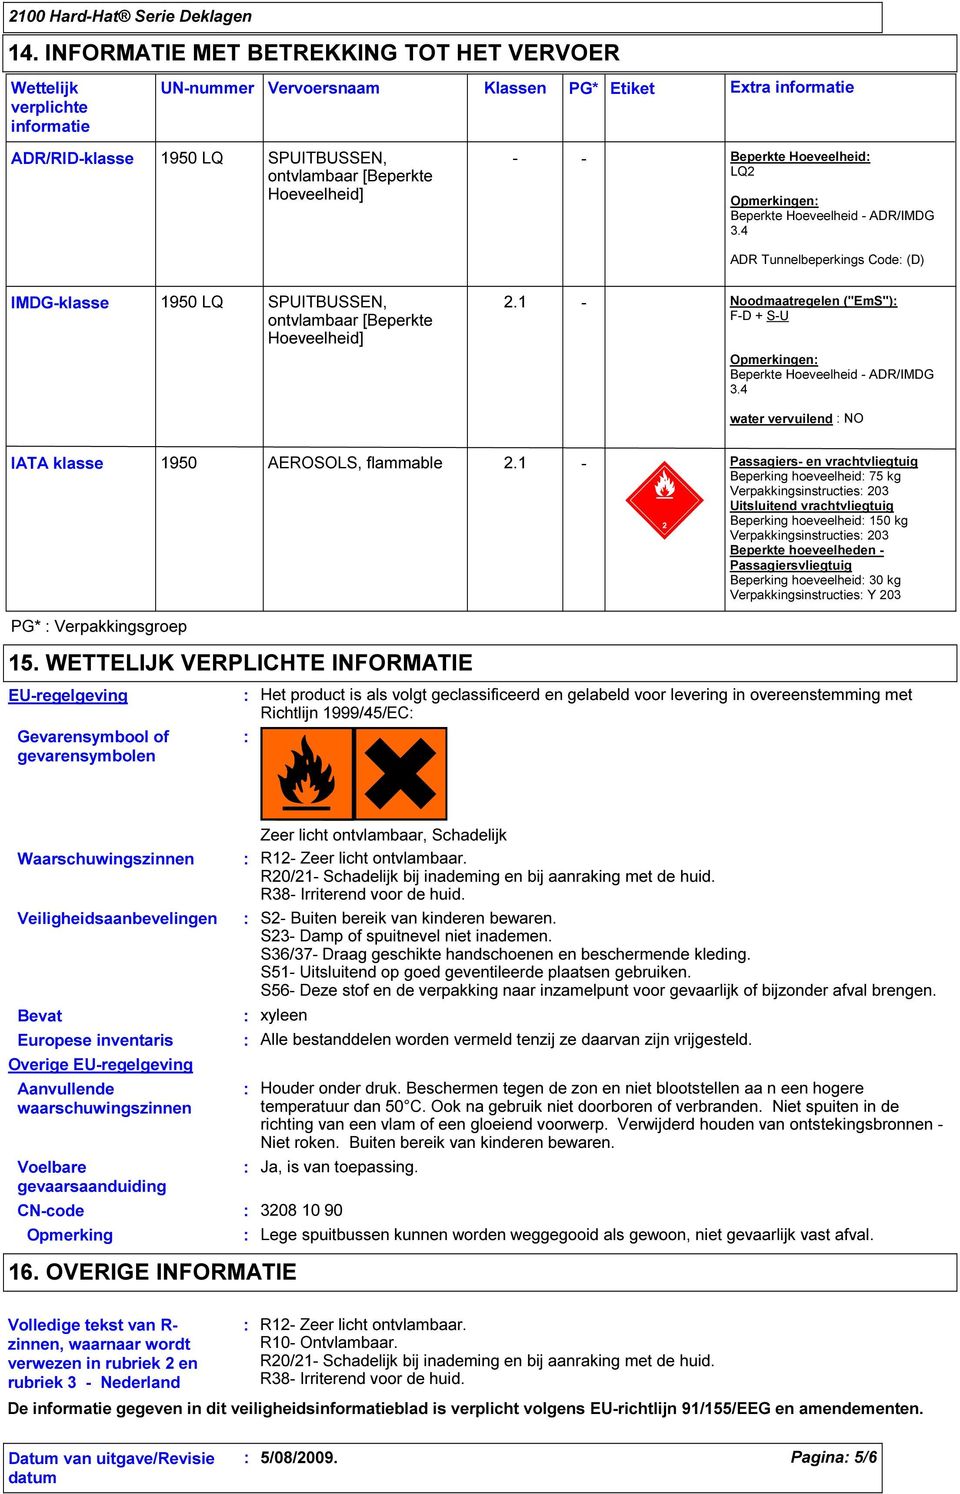 1 - Noodmaatregelen ("EmS") F-D + S-U Opmerkingen Beperkte Hoeveelheid - ADR/IMDG 3.4 water vervuilend NO IATA klasse 1950 AEROSOLS, flammable 2.